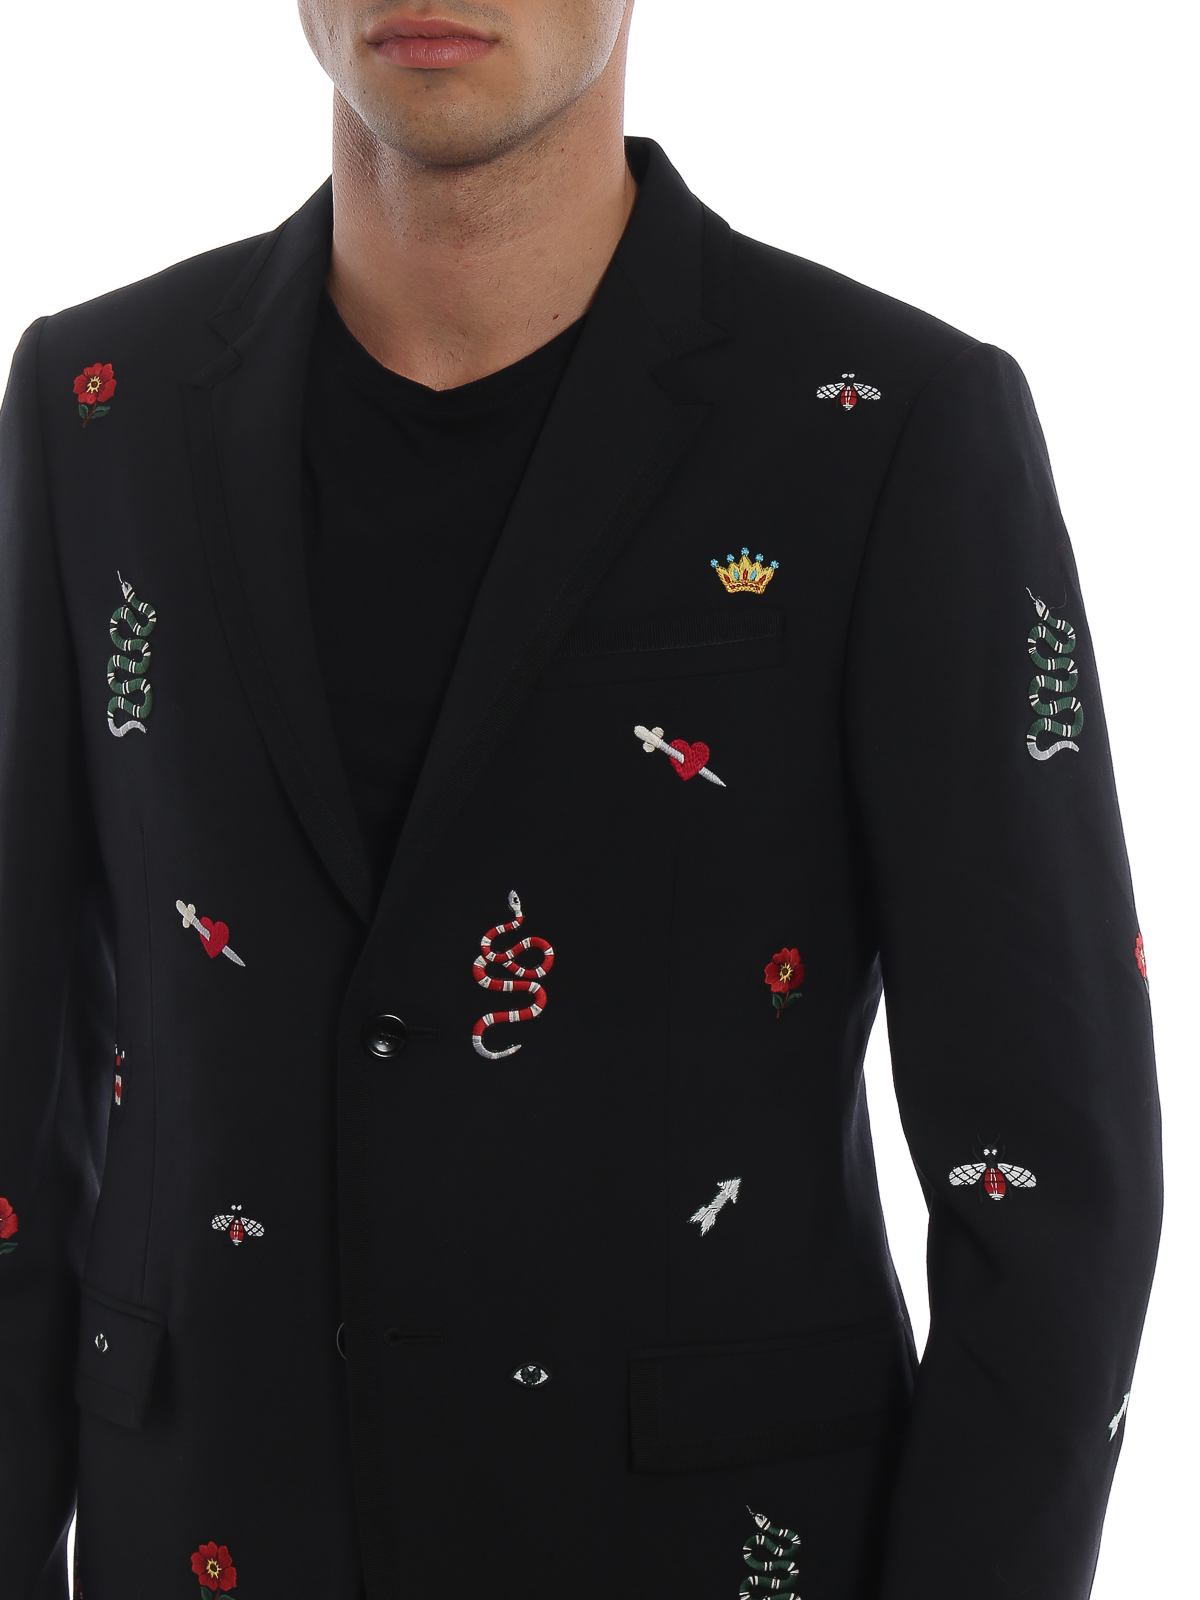 gucci embroidered blazer